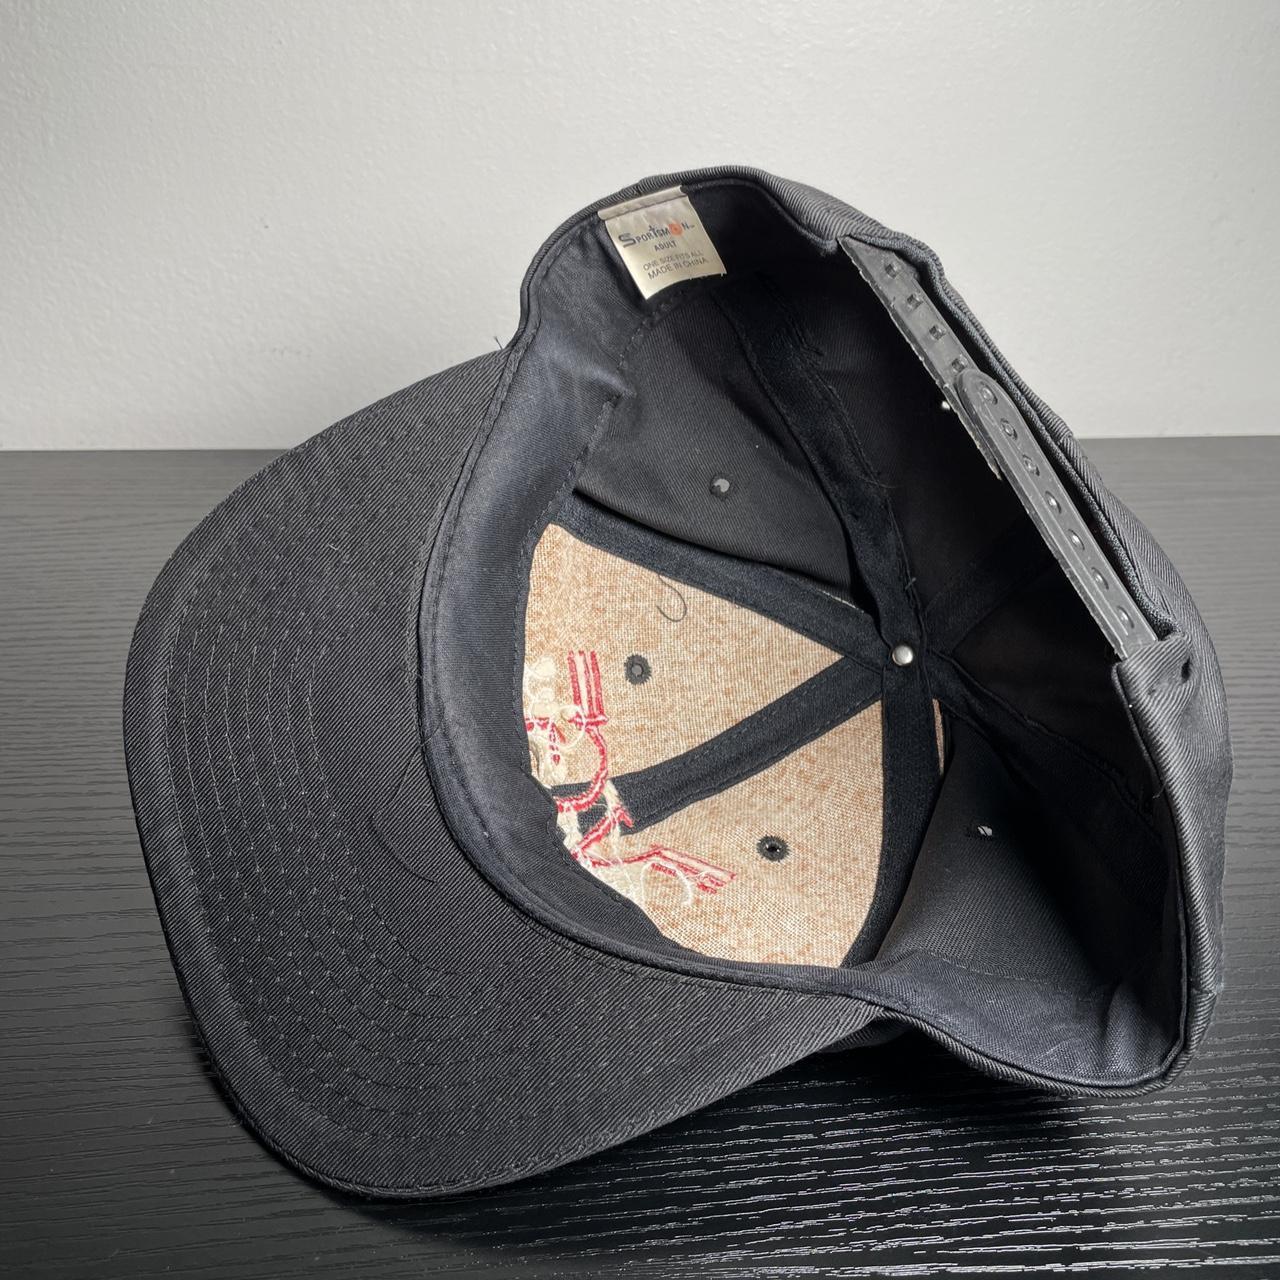 Vintage Vince Gill SnapBack Cap Baseball Hat black... - Depop